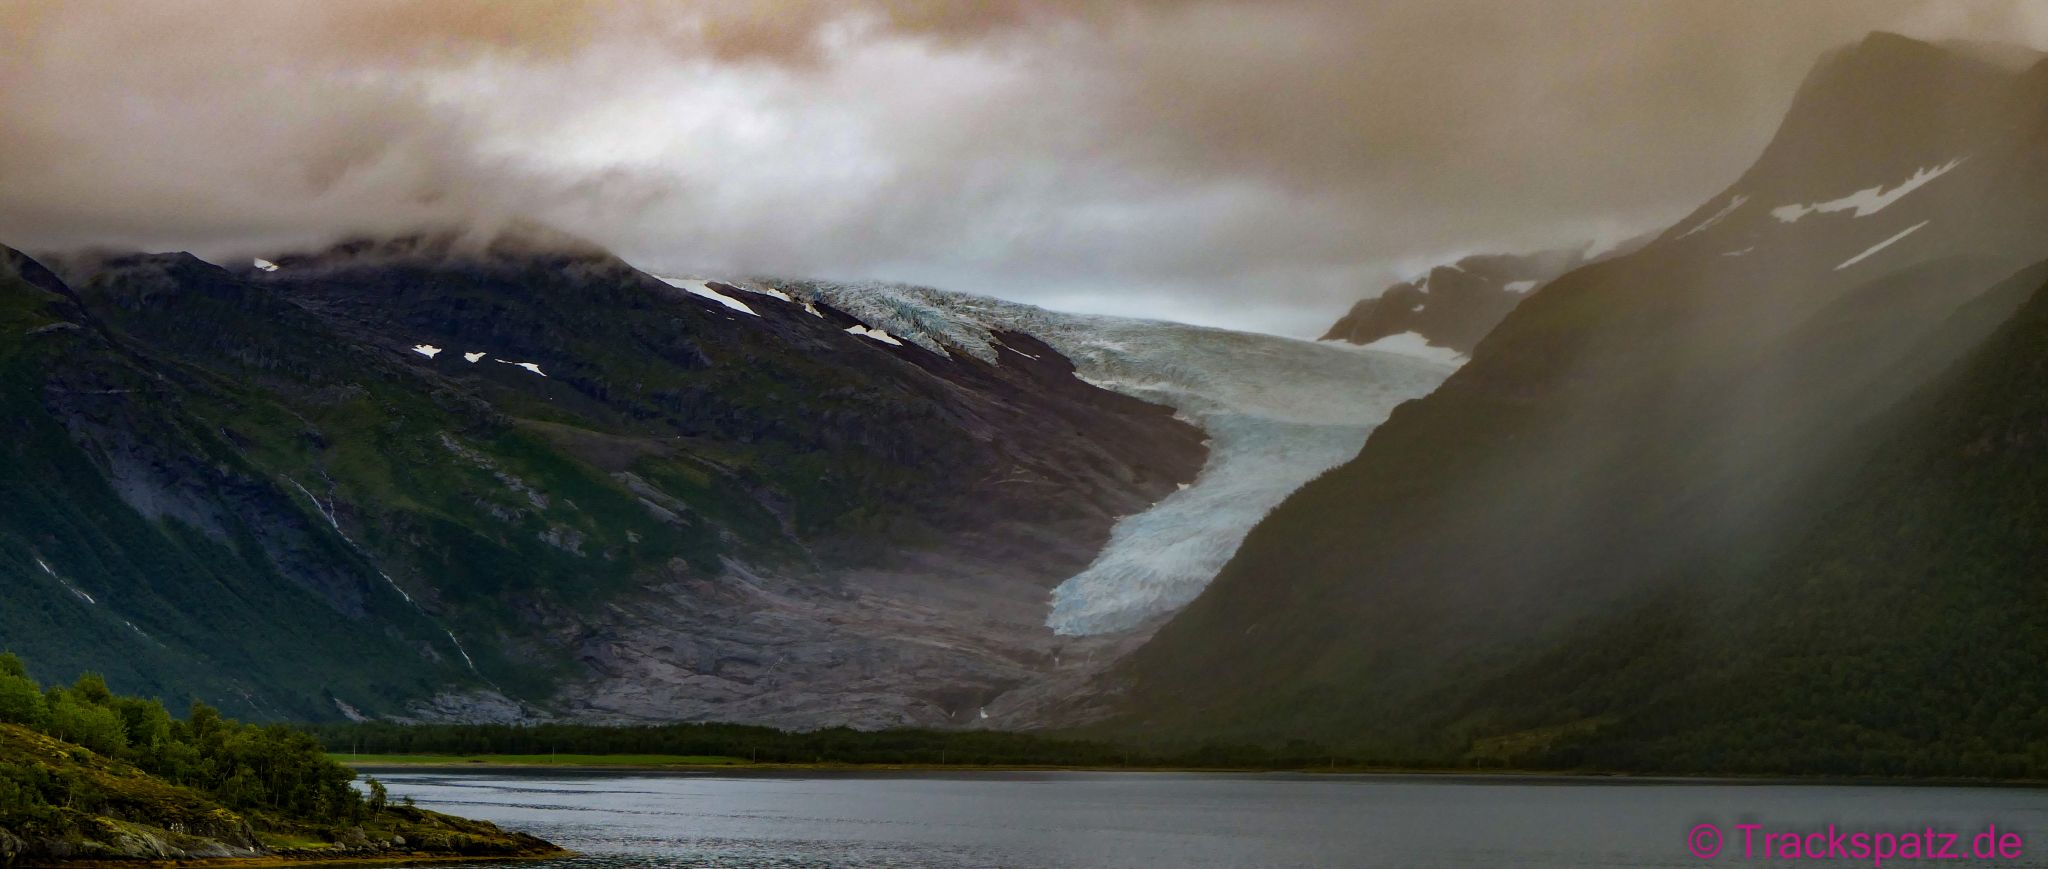 Gletscher, schneebedeckte Berge und Nebel wie im Winter